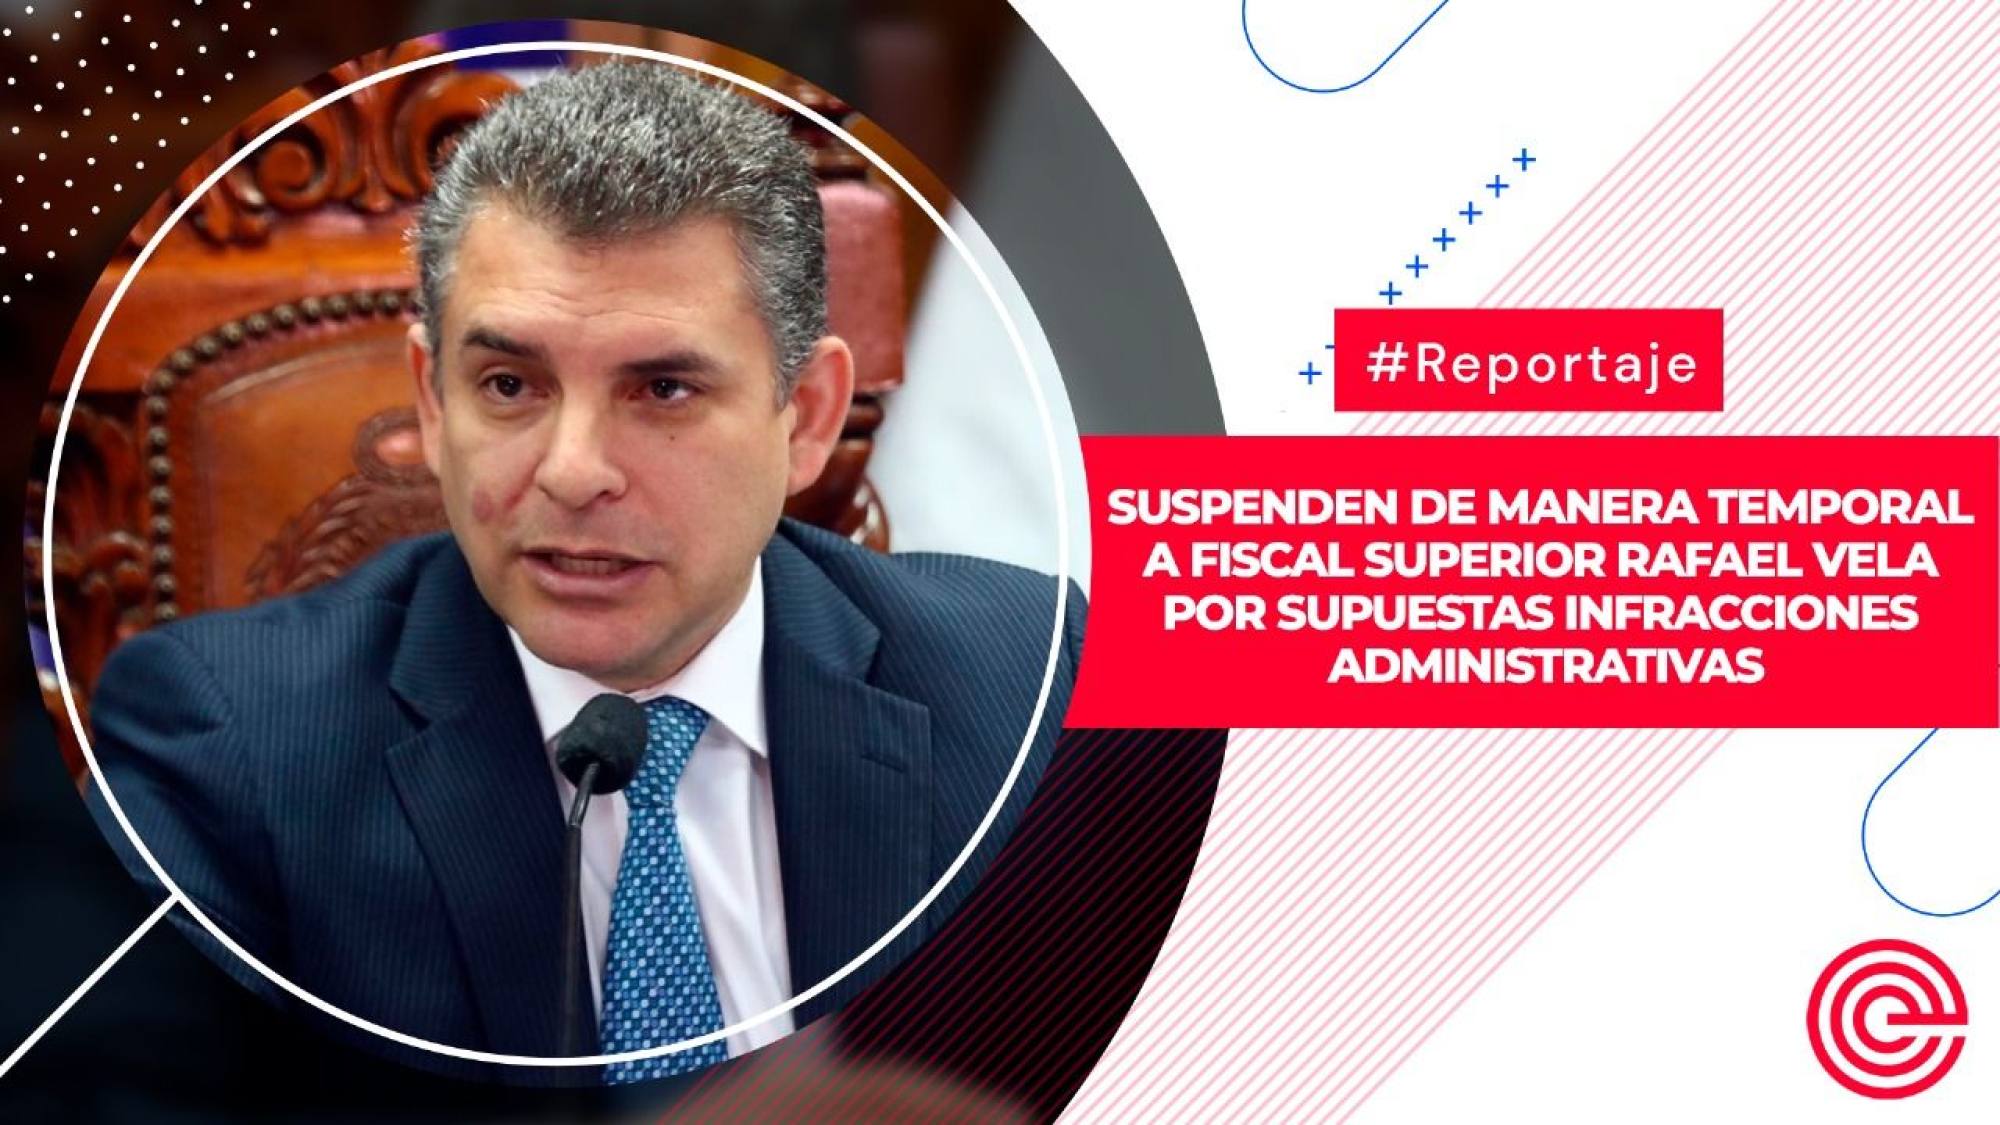 Suspenden de manera temporal a fiscal superior Rafael Vela por supuestas infracciones administrativas, Epicentro TV